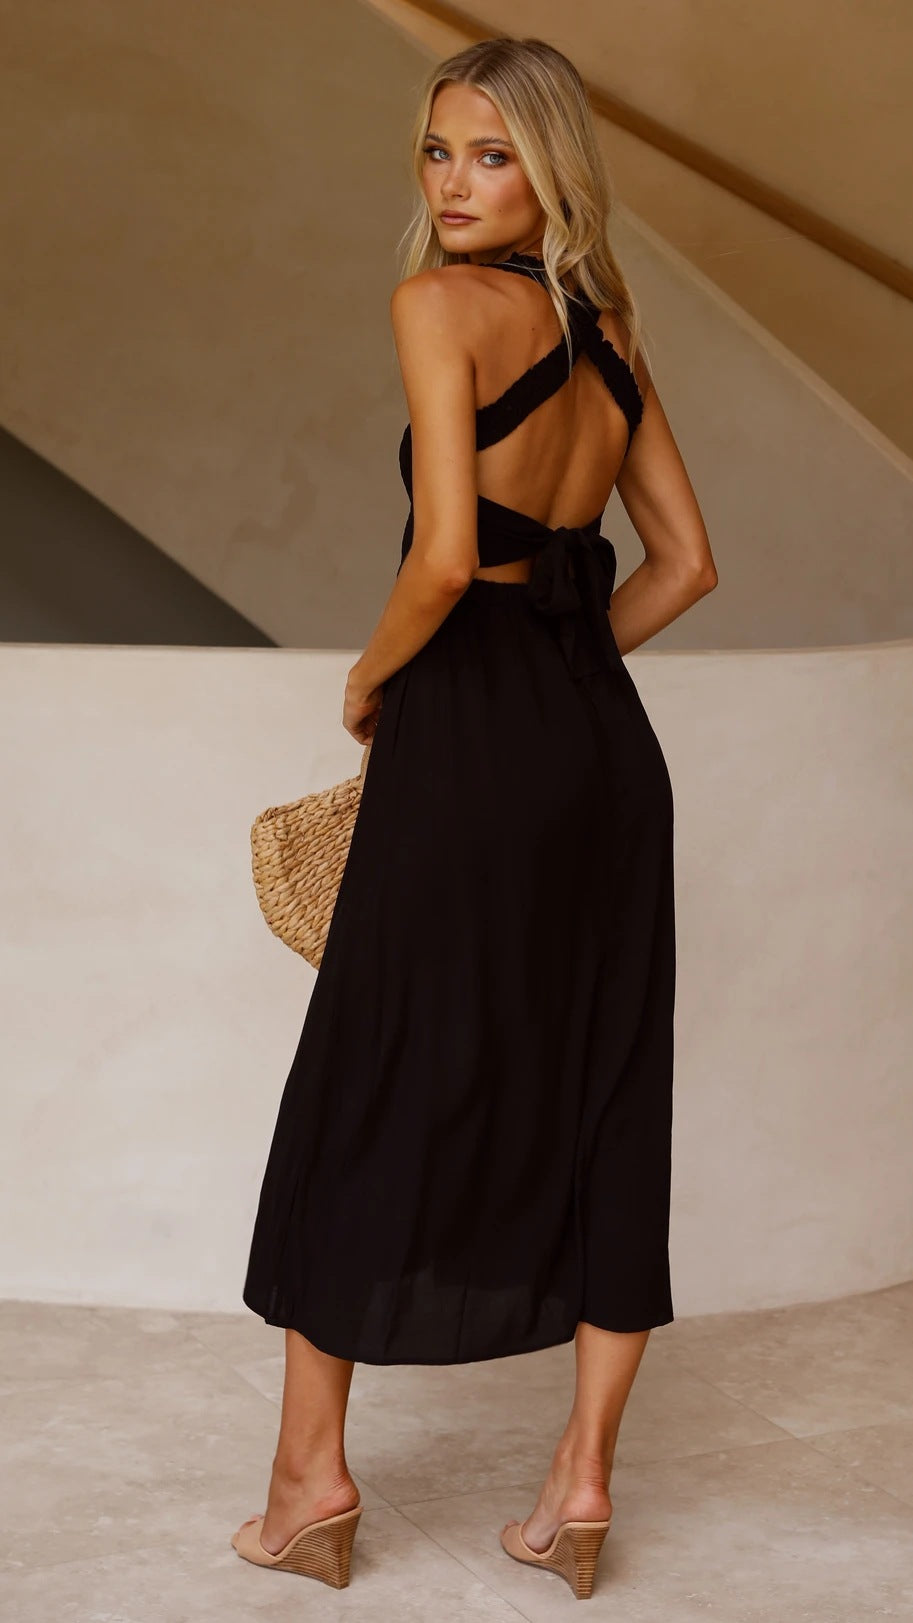 Black Minimal Sleeveless Midi Dress